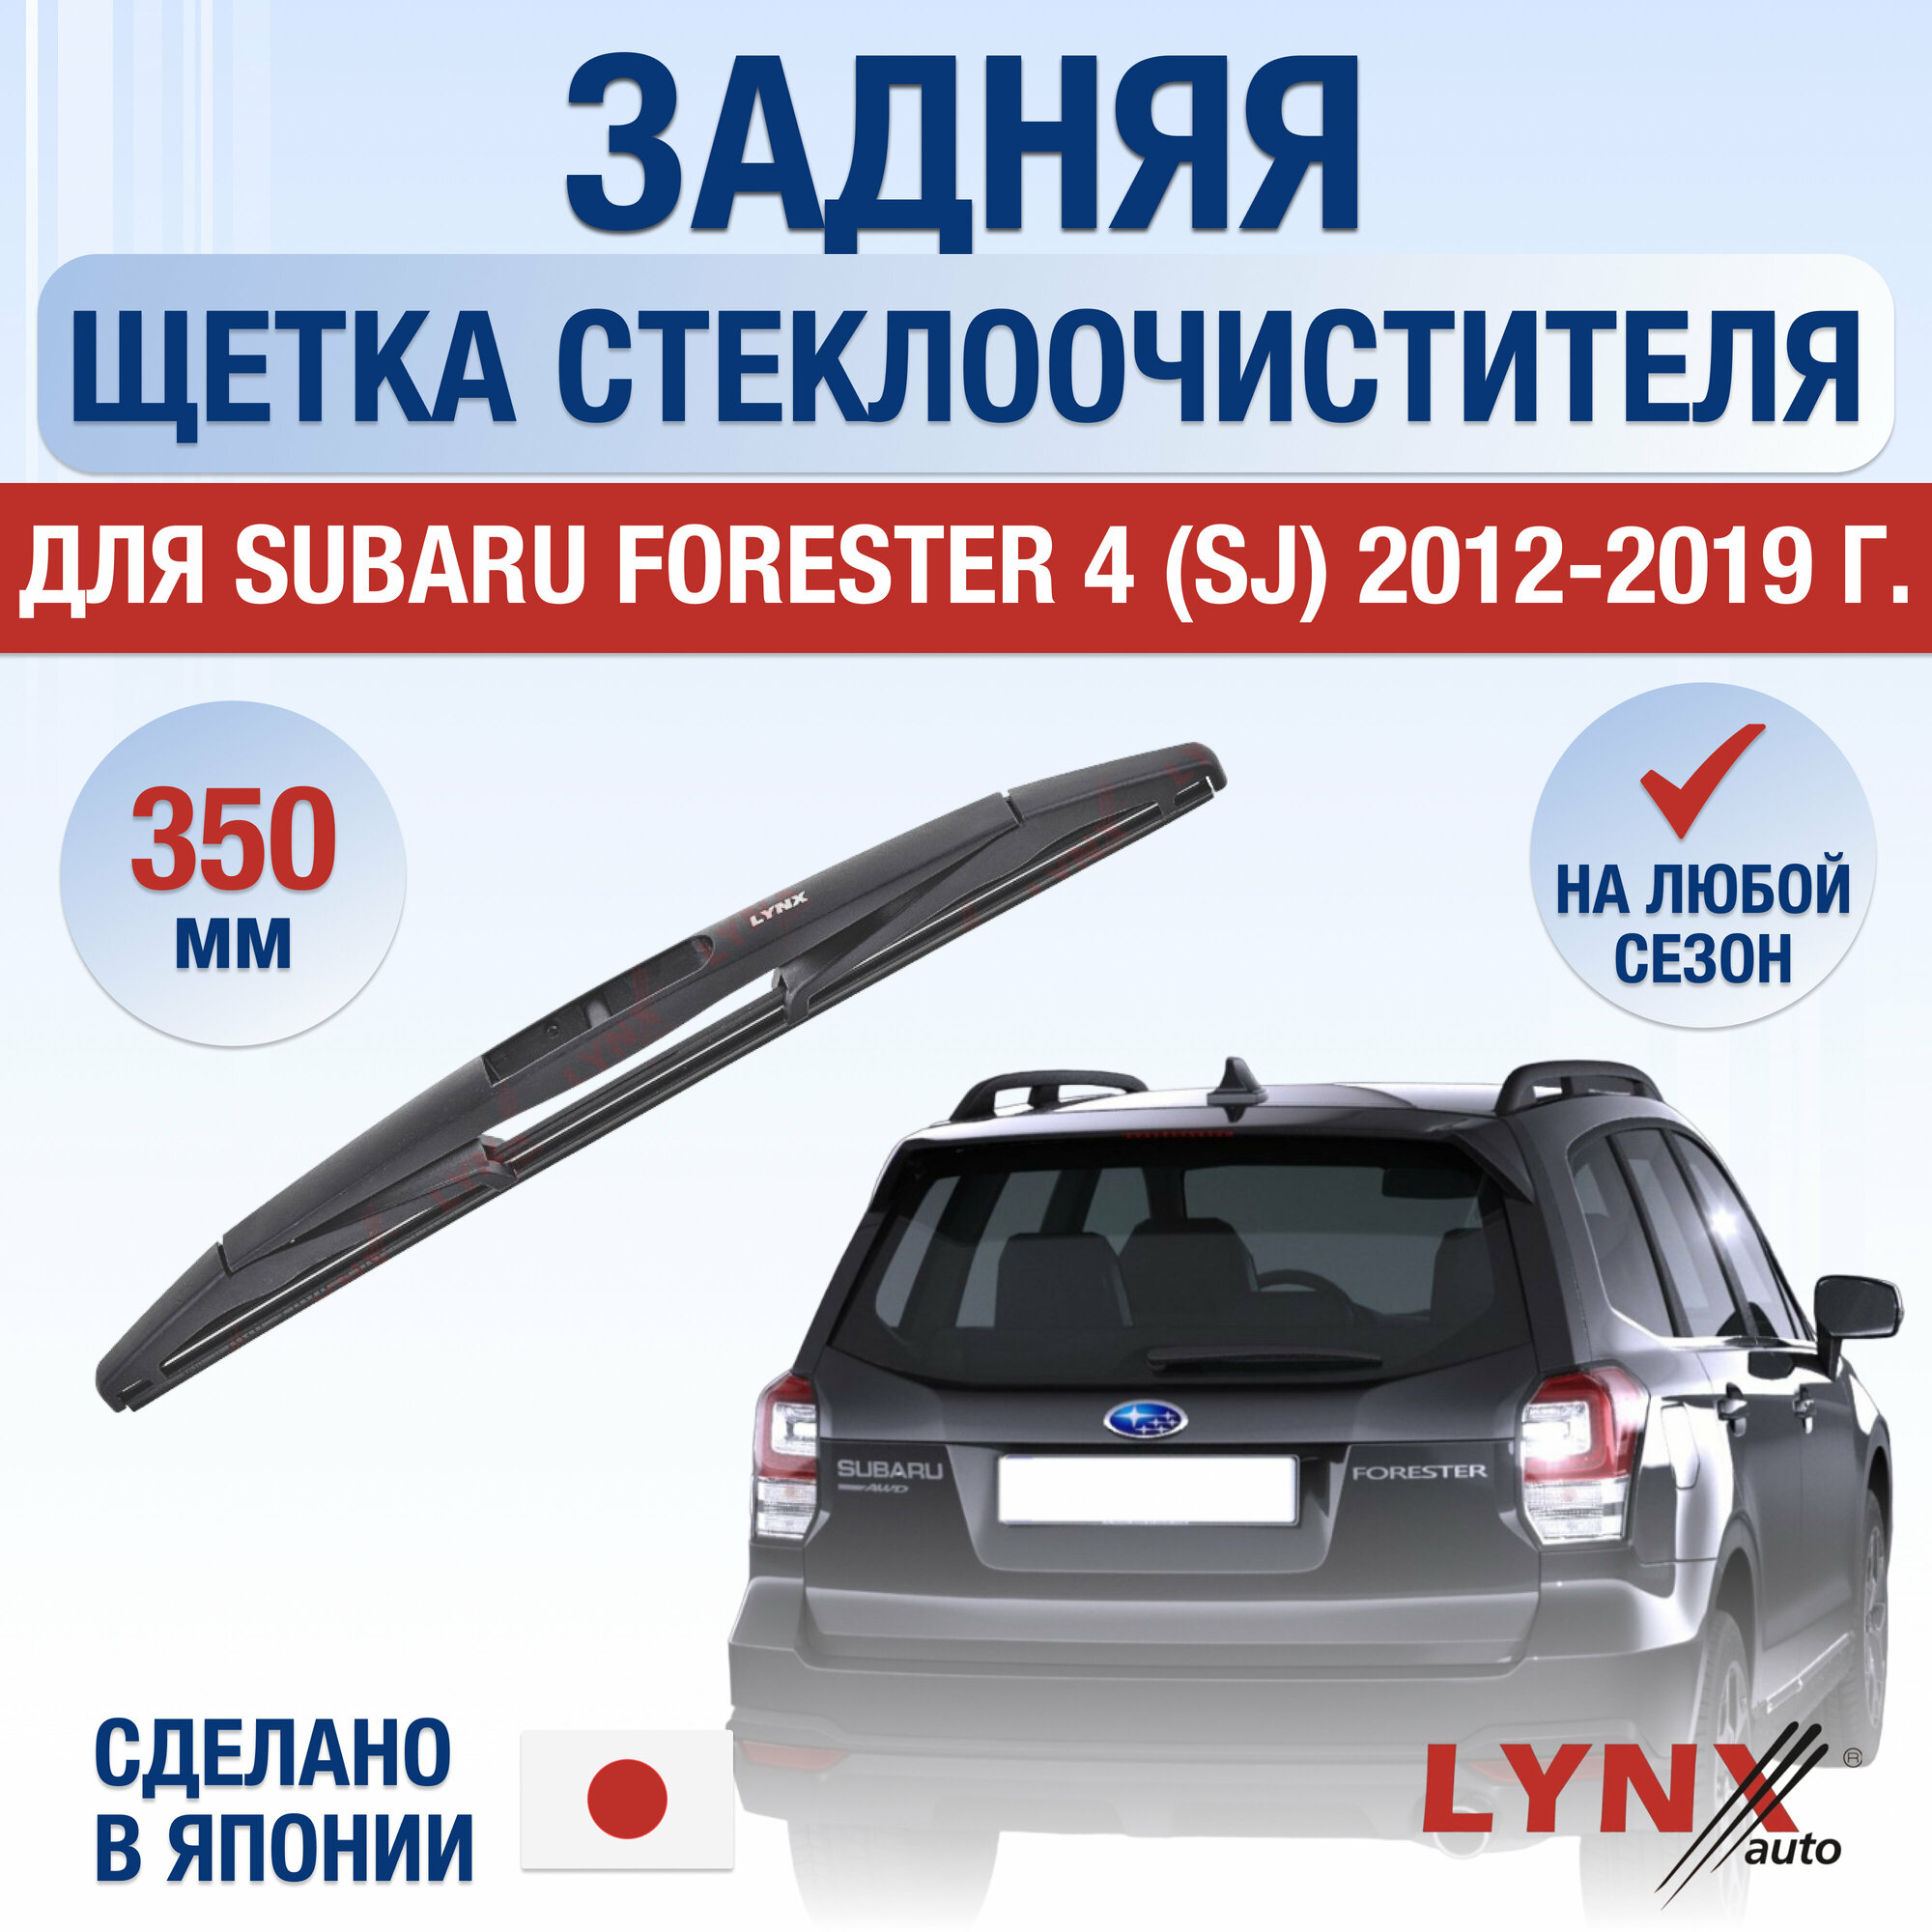 Задняя щетка стеклоочистителя для Subaru Forester 4 (SJ) / 2012 2013 2014 2015 2016 2017 2018 2019 / Задний дворник 350 мм Субару Форестер